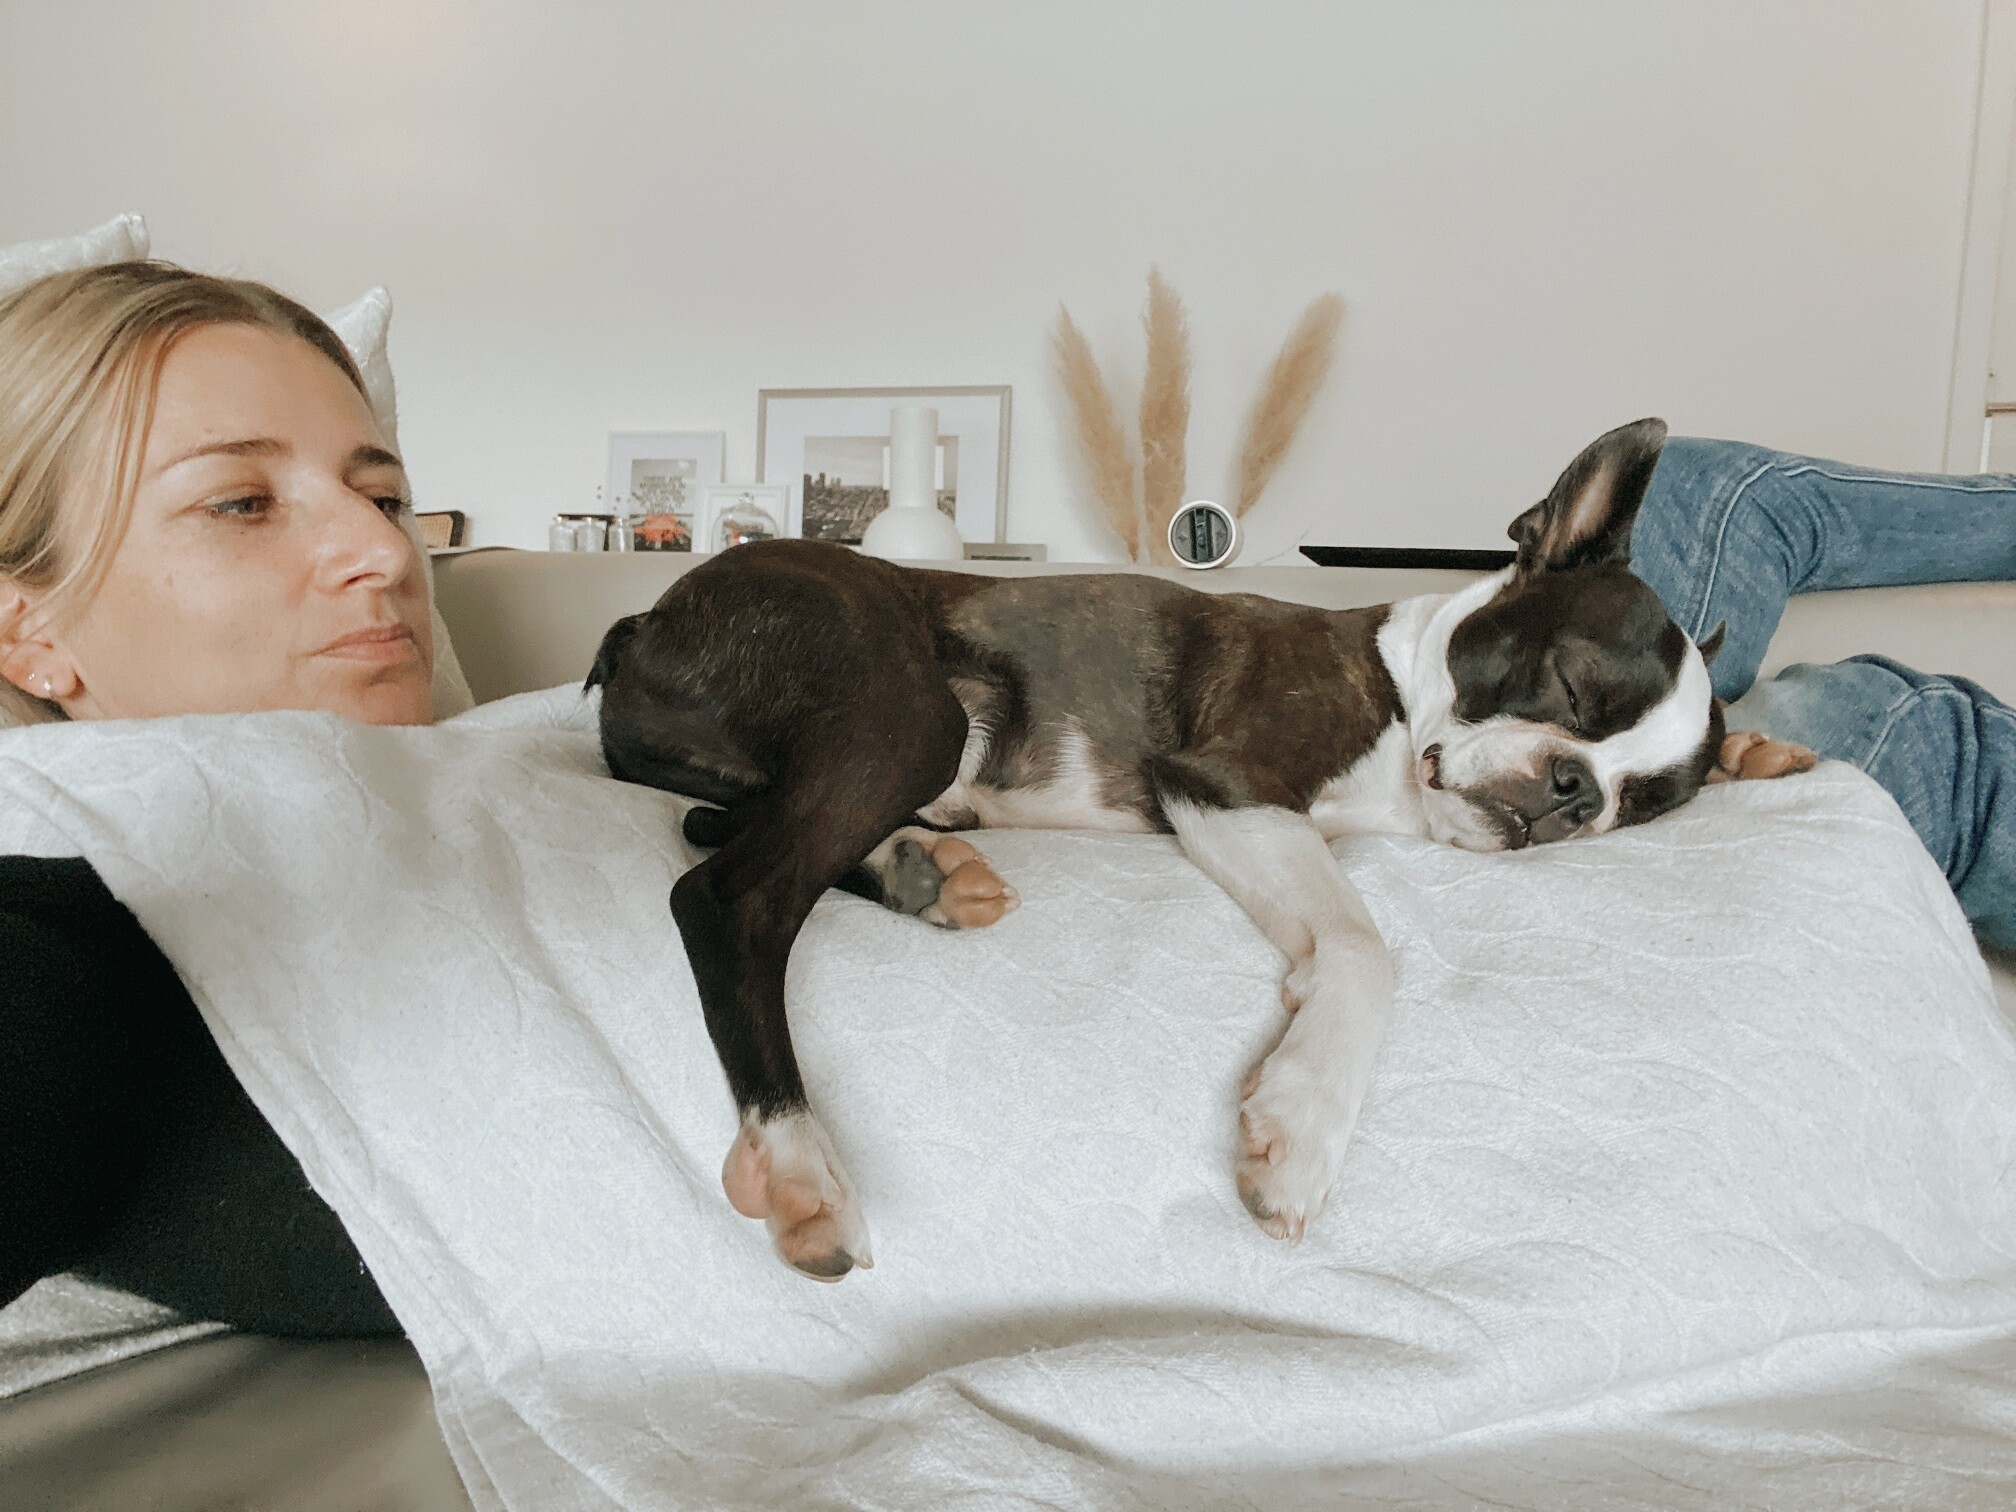 Manuela Schär è sdraiata sul divano, mentre il cane Lui dorme su di lei.